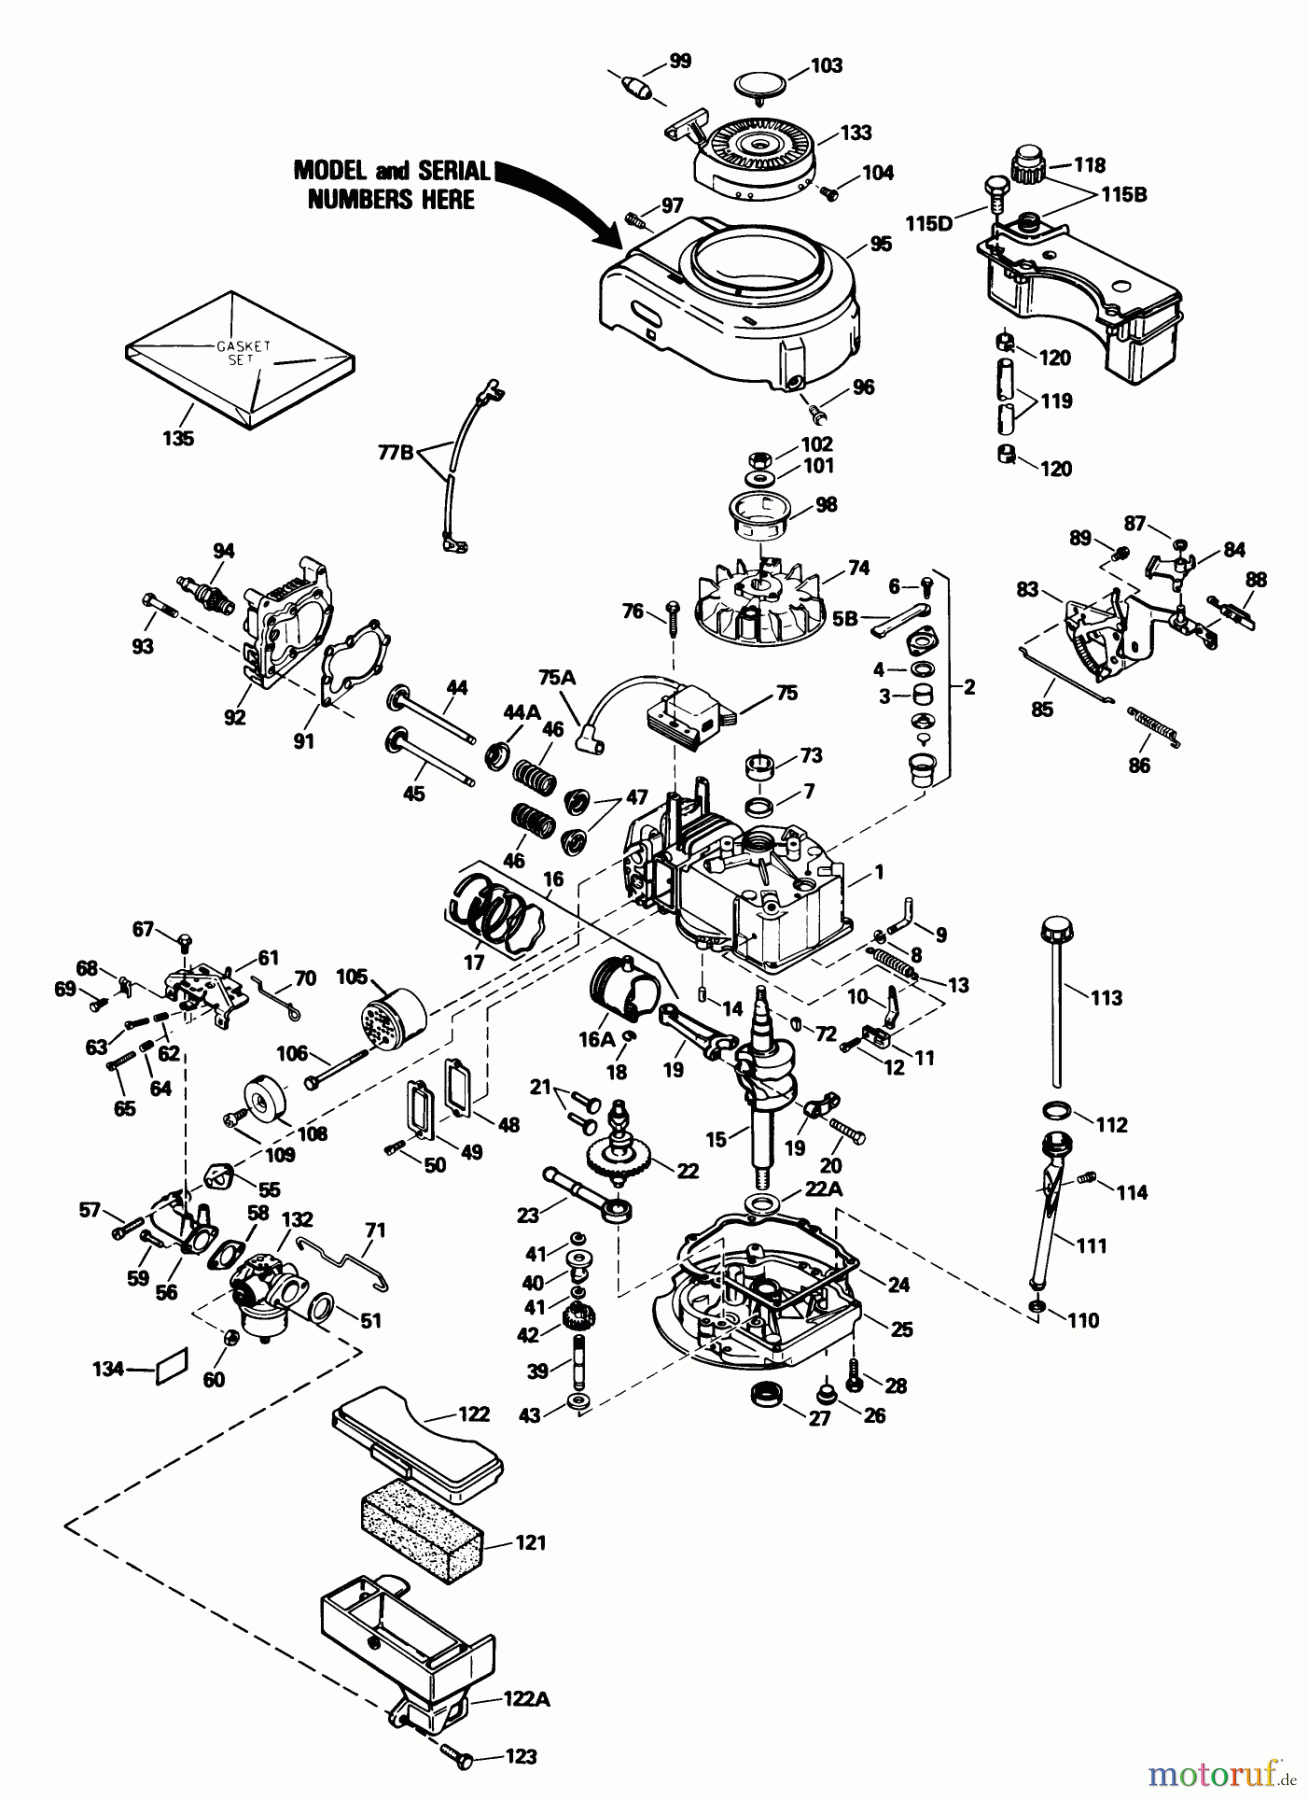  Toro Neu Mowers, Walk-Behind Seite 1 16575 - Toro Lawnmower, 1989 (9000001-9999999) ENGINE TECUMSEH MODEL NO. TVS100-44016B